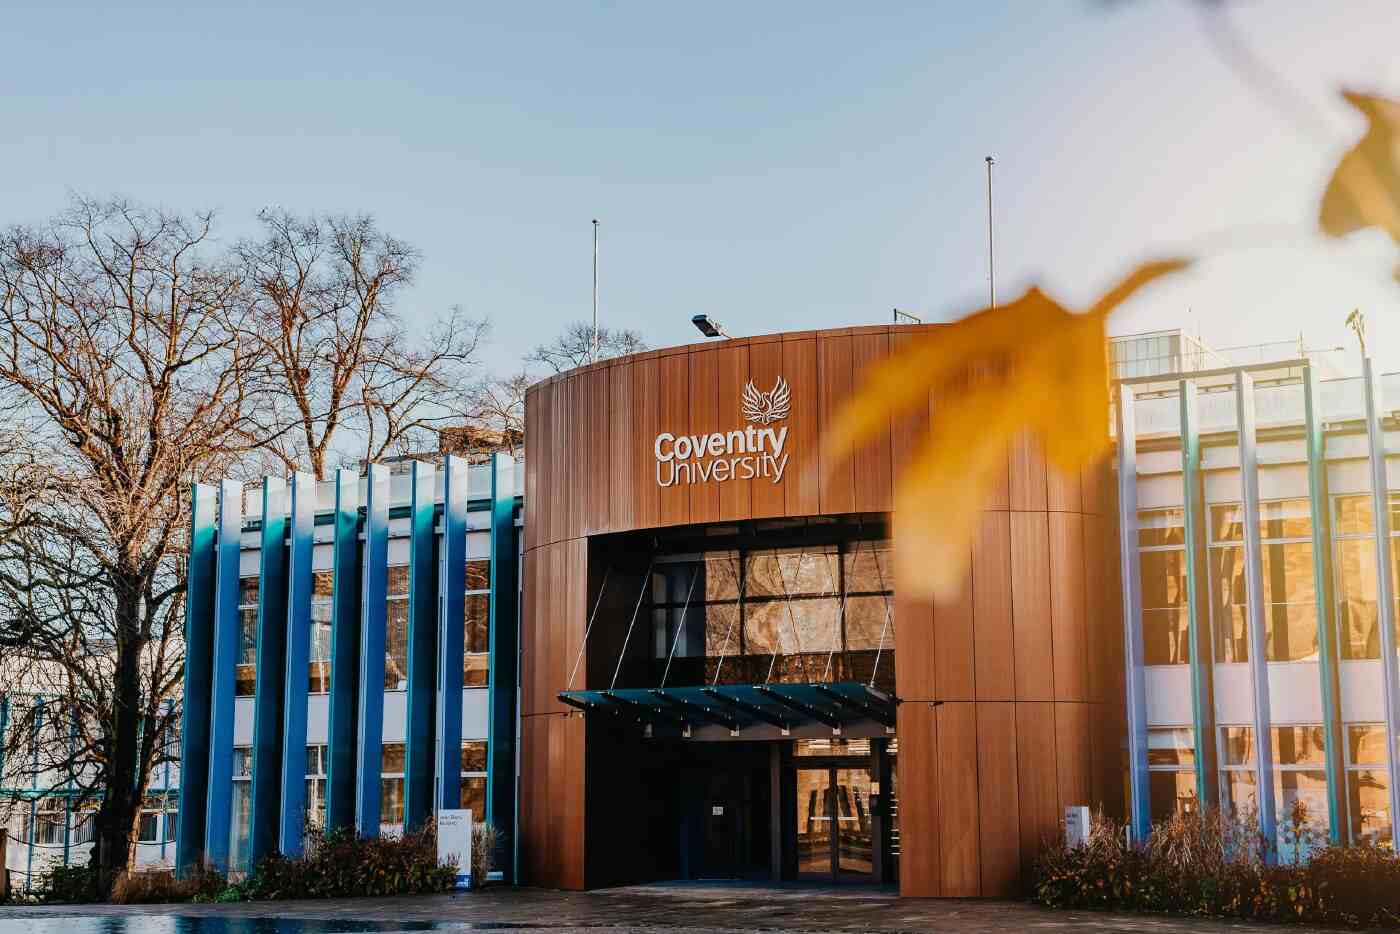 Syarat Cara Daftar Kuliah Di Coventry University 2023 - Education Republic